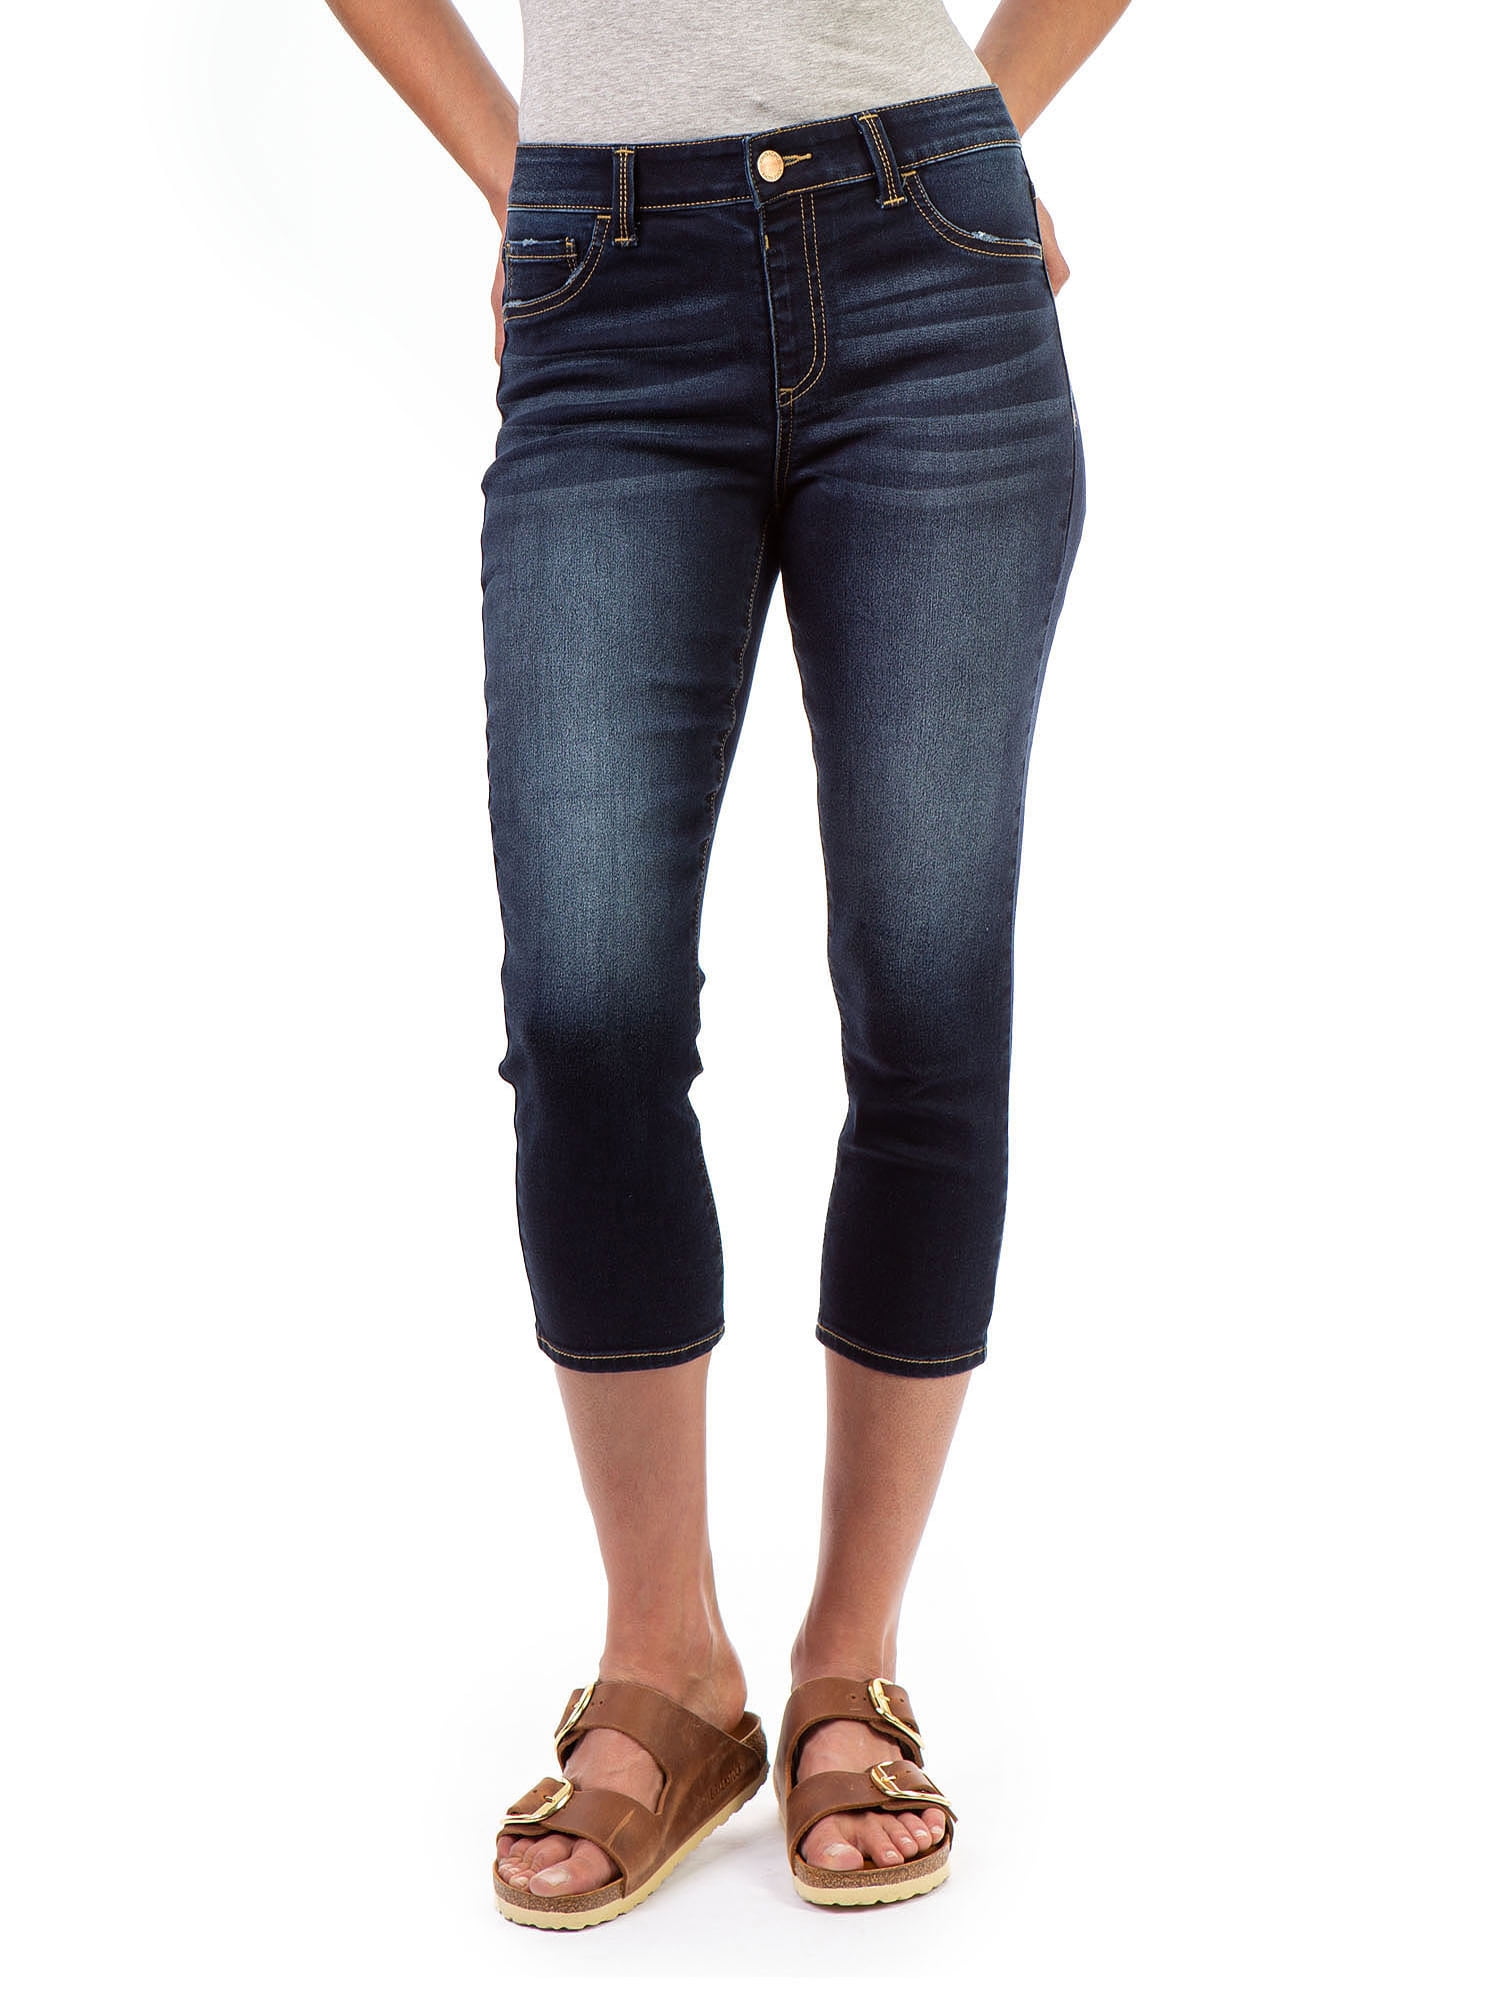 Jordache Women's High Rise Pull On Super Skinny Capri Jeans